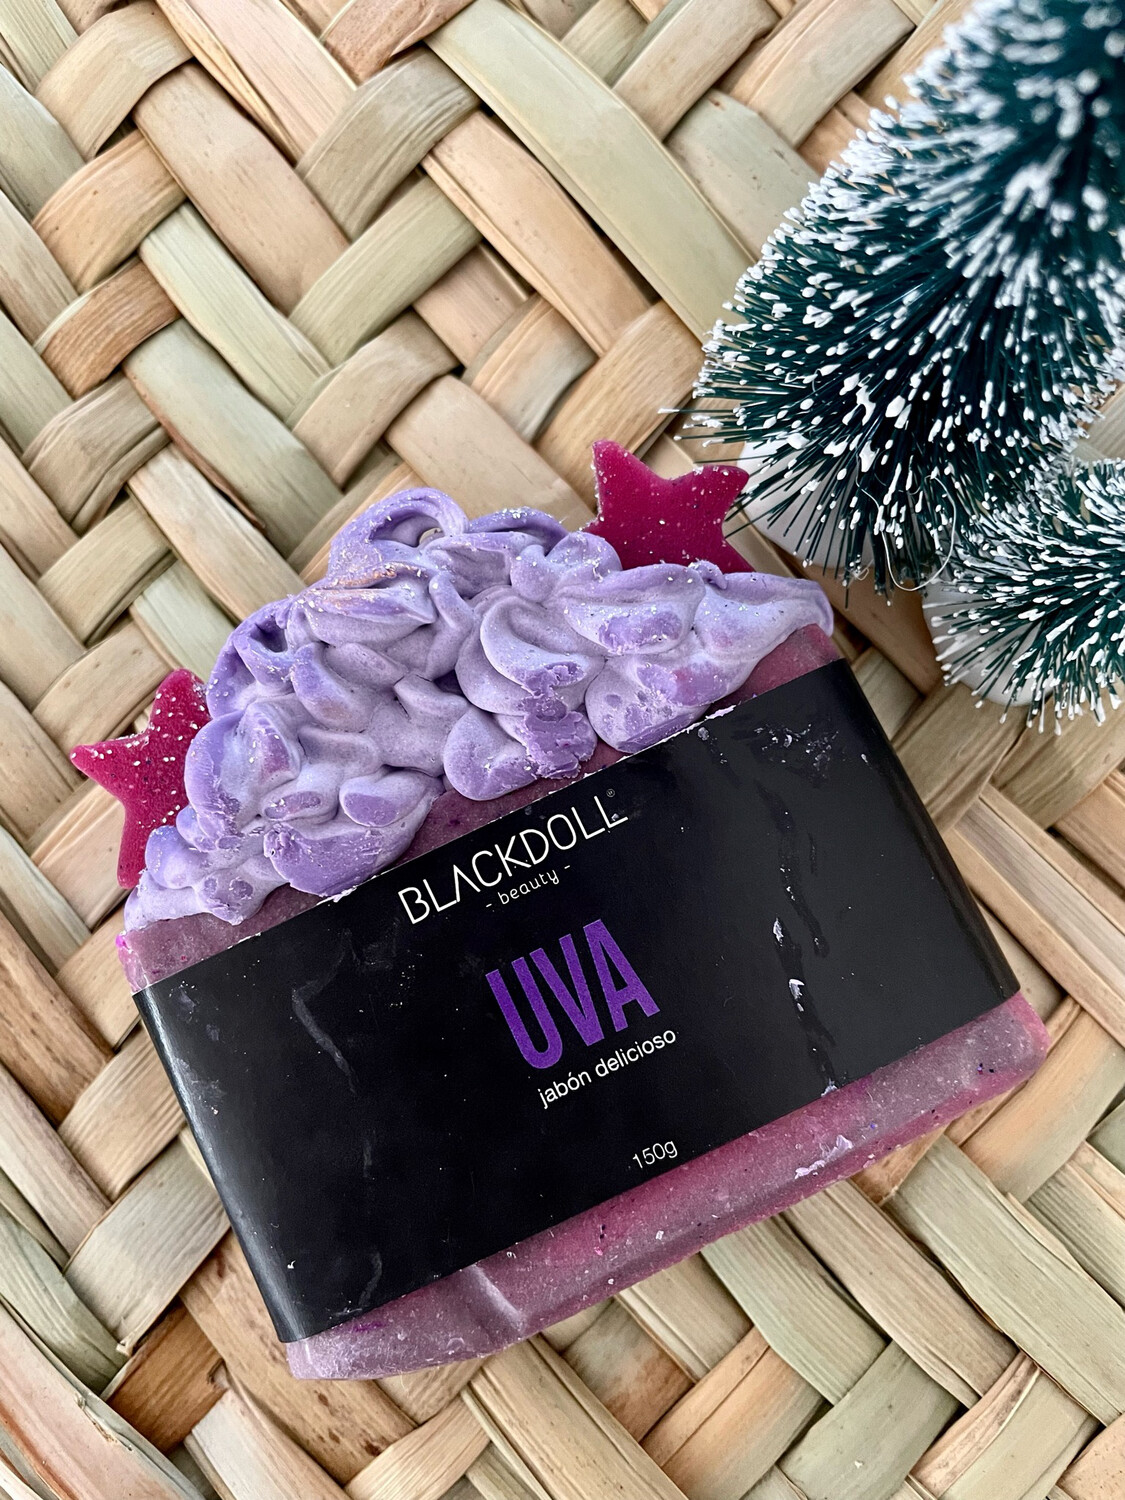 BLACKDOLL BEAUTY - Jabón Delicioso de Uva 🍇 150grs | Delicious Soap